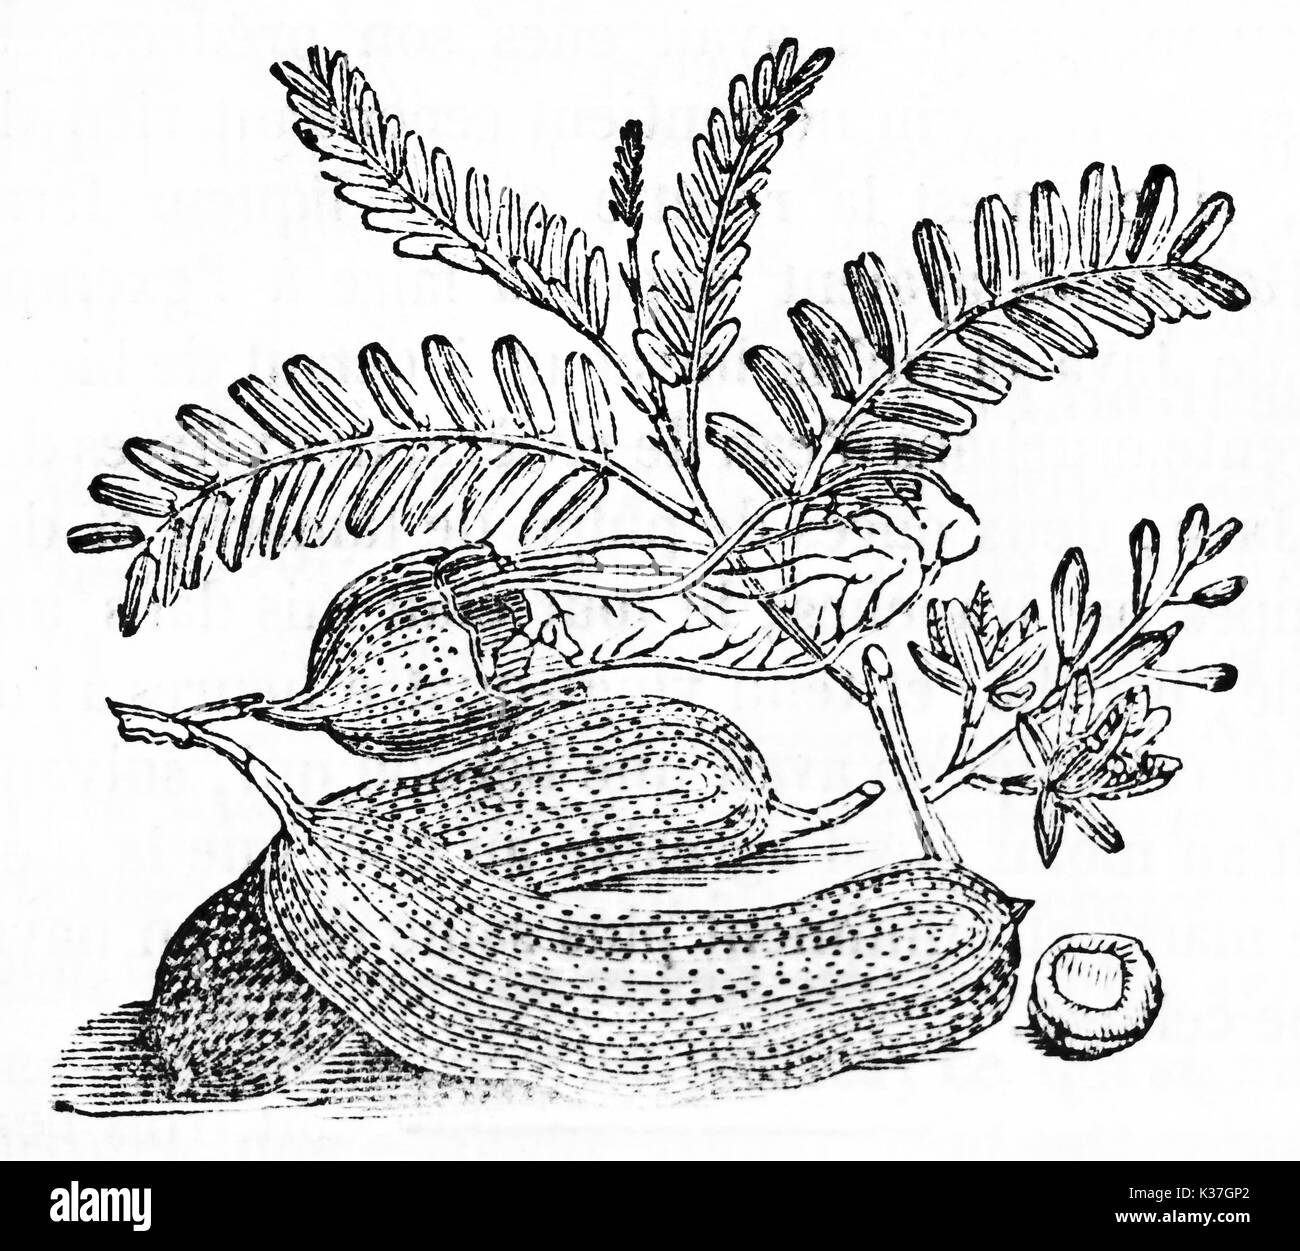 Schwarze und weiße botanischen Abbildung der Tamarinde Früchte und Blätter (Tamarindus indica). Alte Illustration von unbekannter Autor auf Magasin Pittoresque Paris 1834 veröffentlicht. Stockfoto